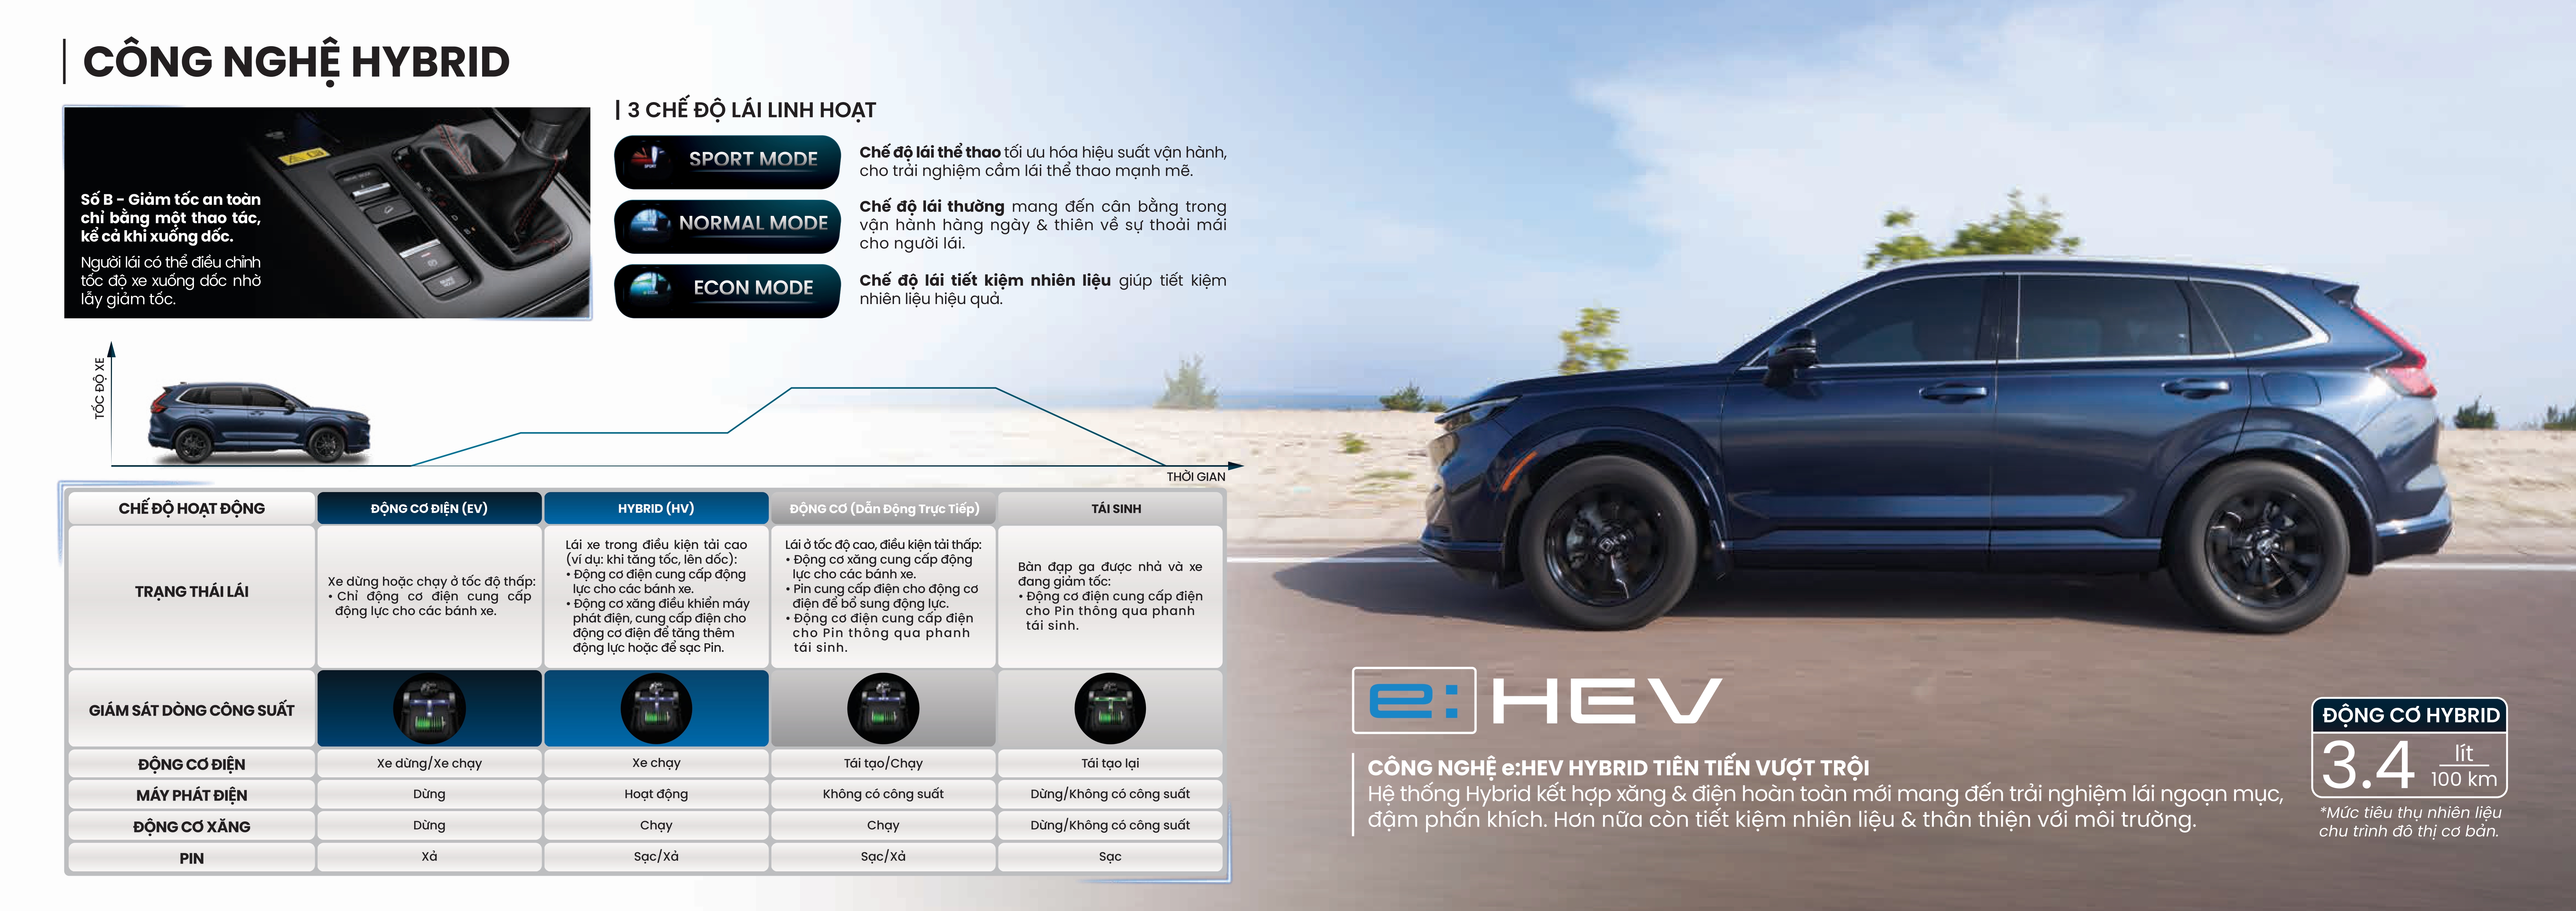 Honda CR-V e:HEV RS động cơ Hybrid - Honda Ô tô Khánh Hòa - Nha Trang | Hotline 0905 254 255